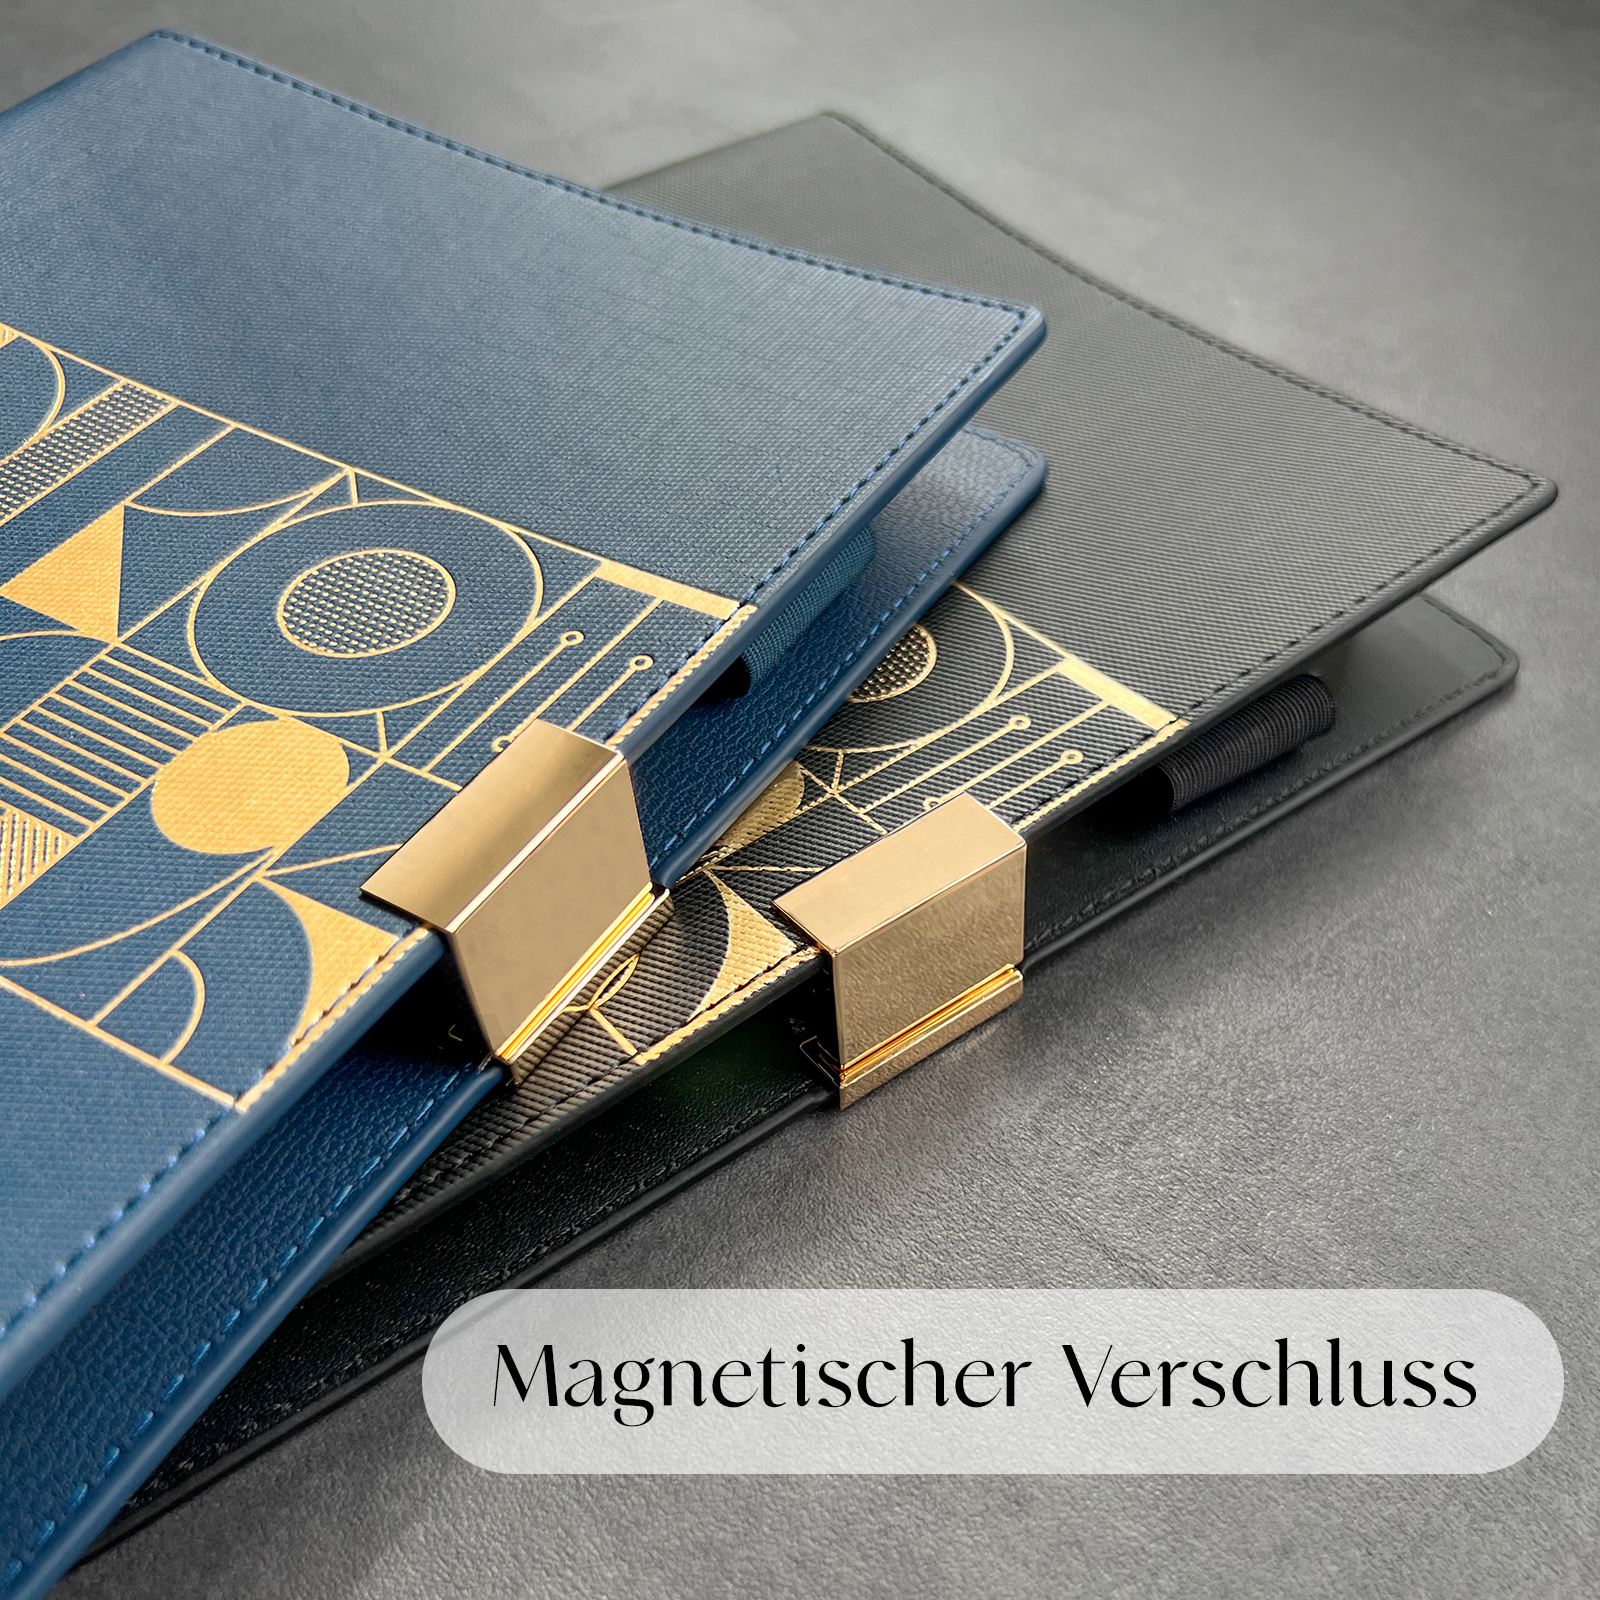 Terminplaner-Organizer-Magnetverschluss-Schnalle-Goldfarben-Cover-Blau-Schwarz